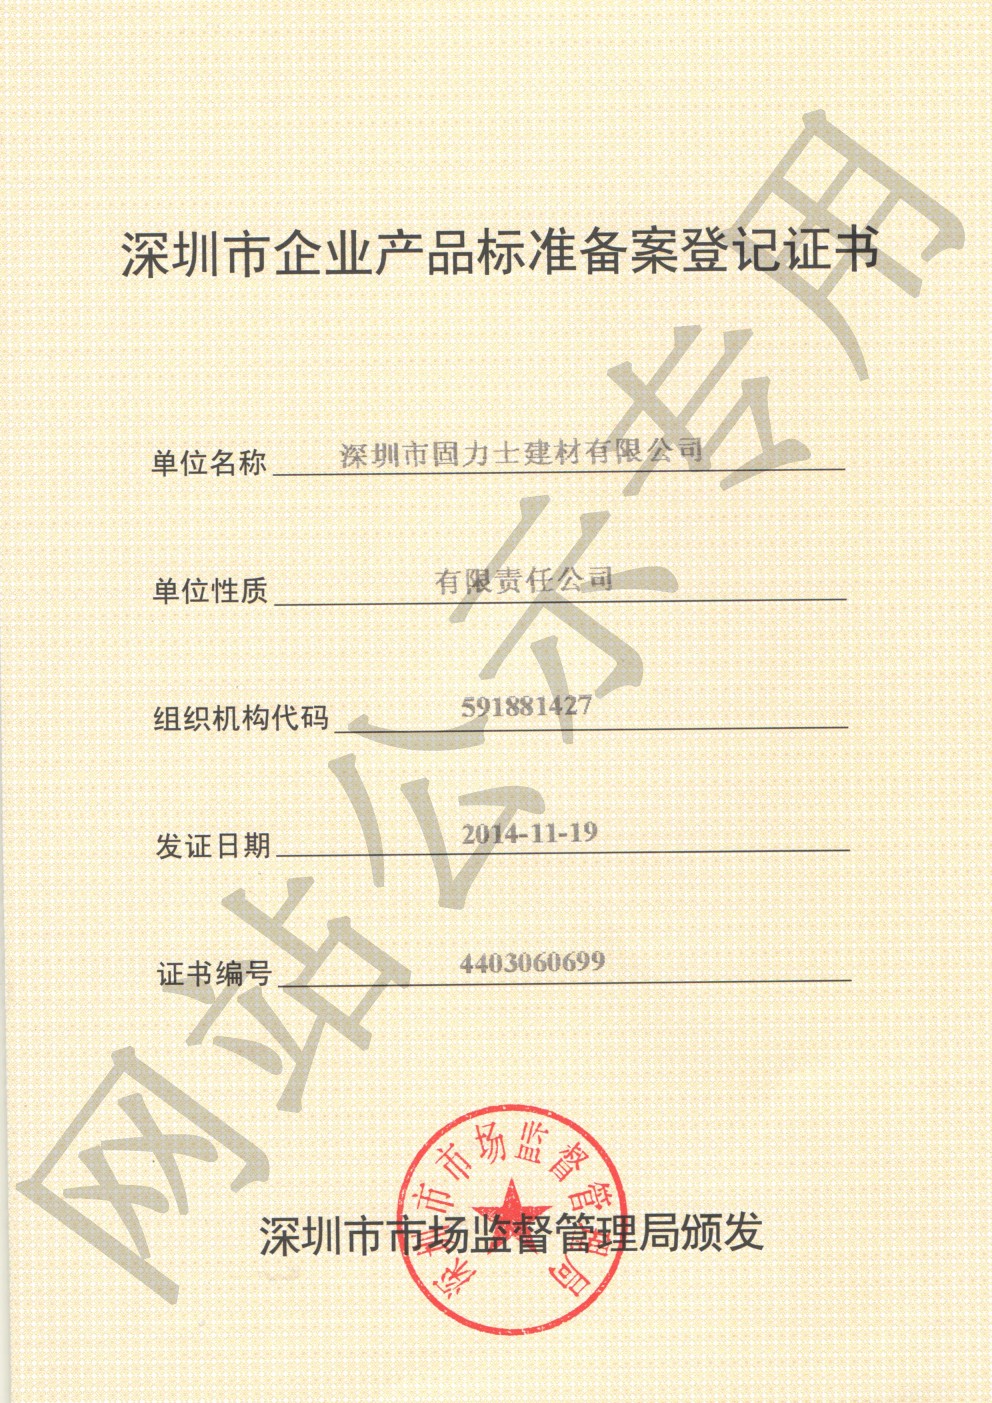 墨江企业产品标准登记证书